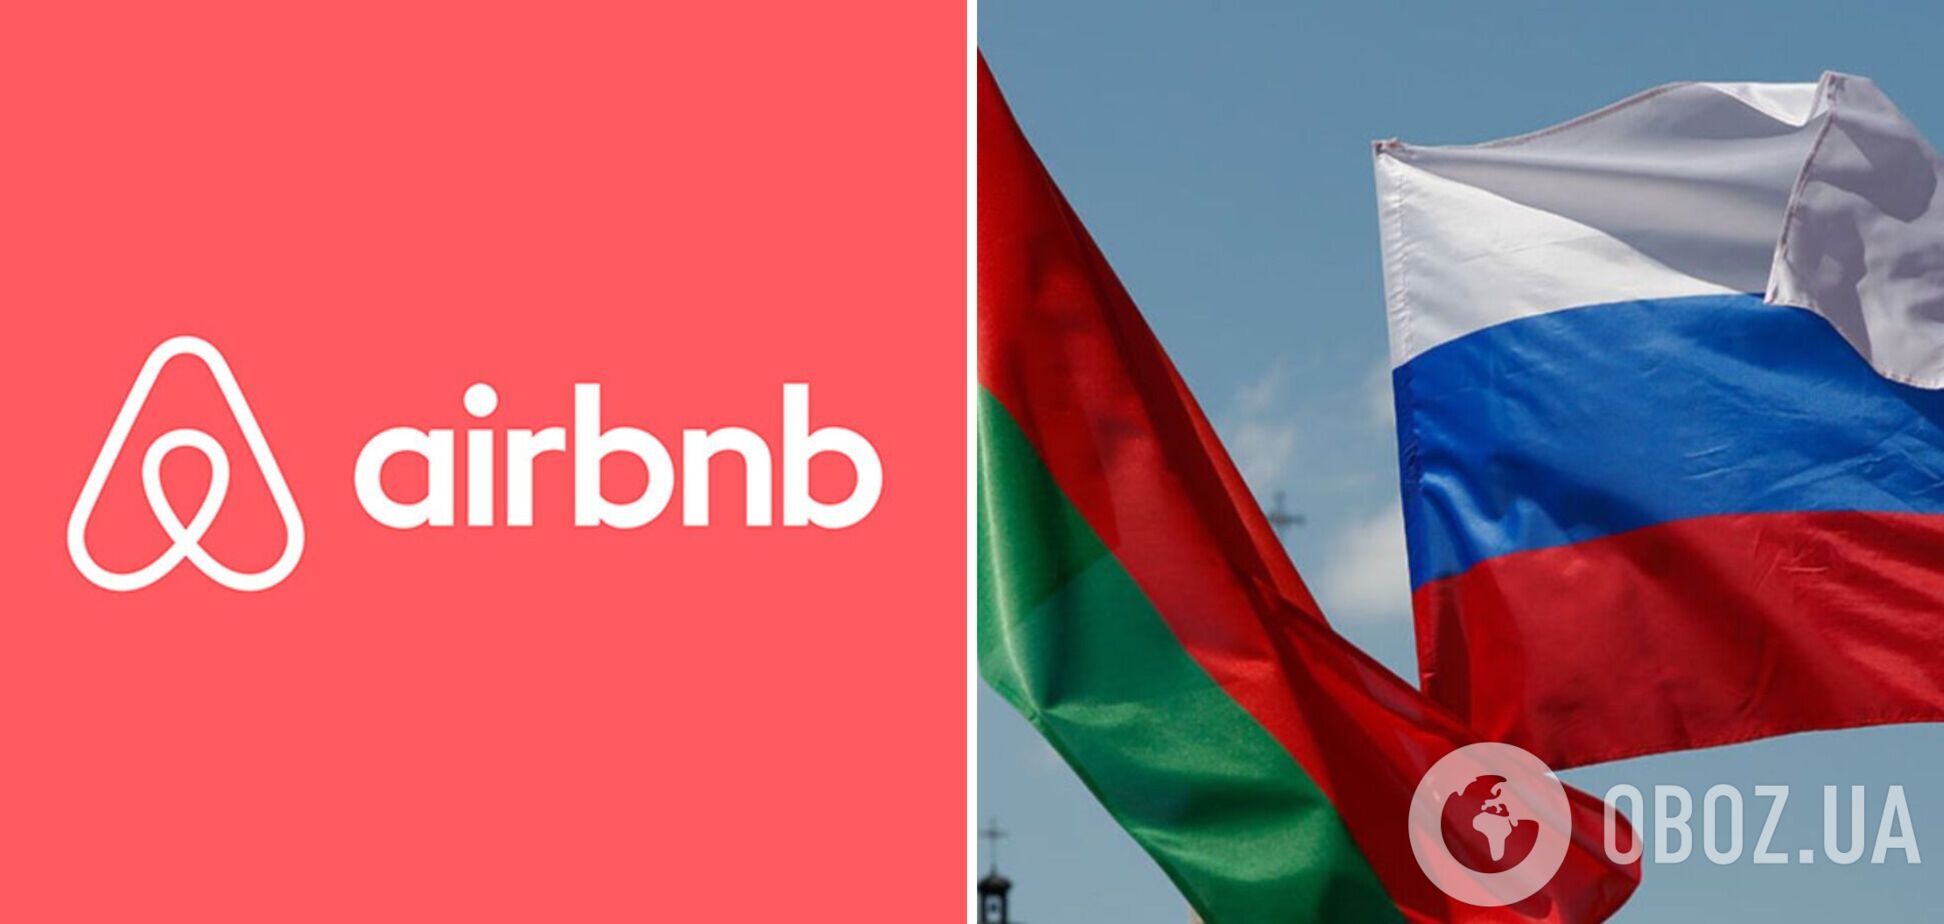 Популярний сервіс оренди житла Airbnb зупинив роботу в Росії та Білорусі